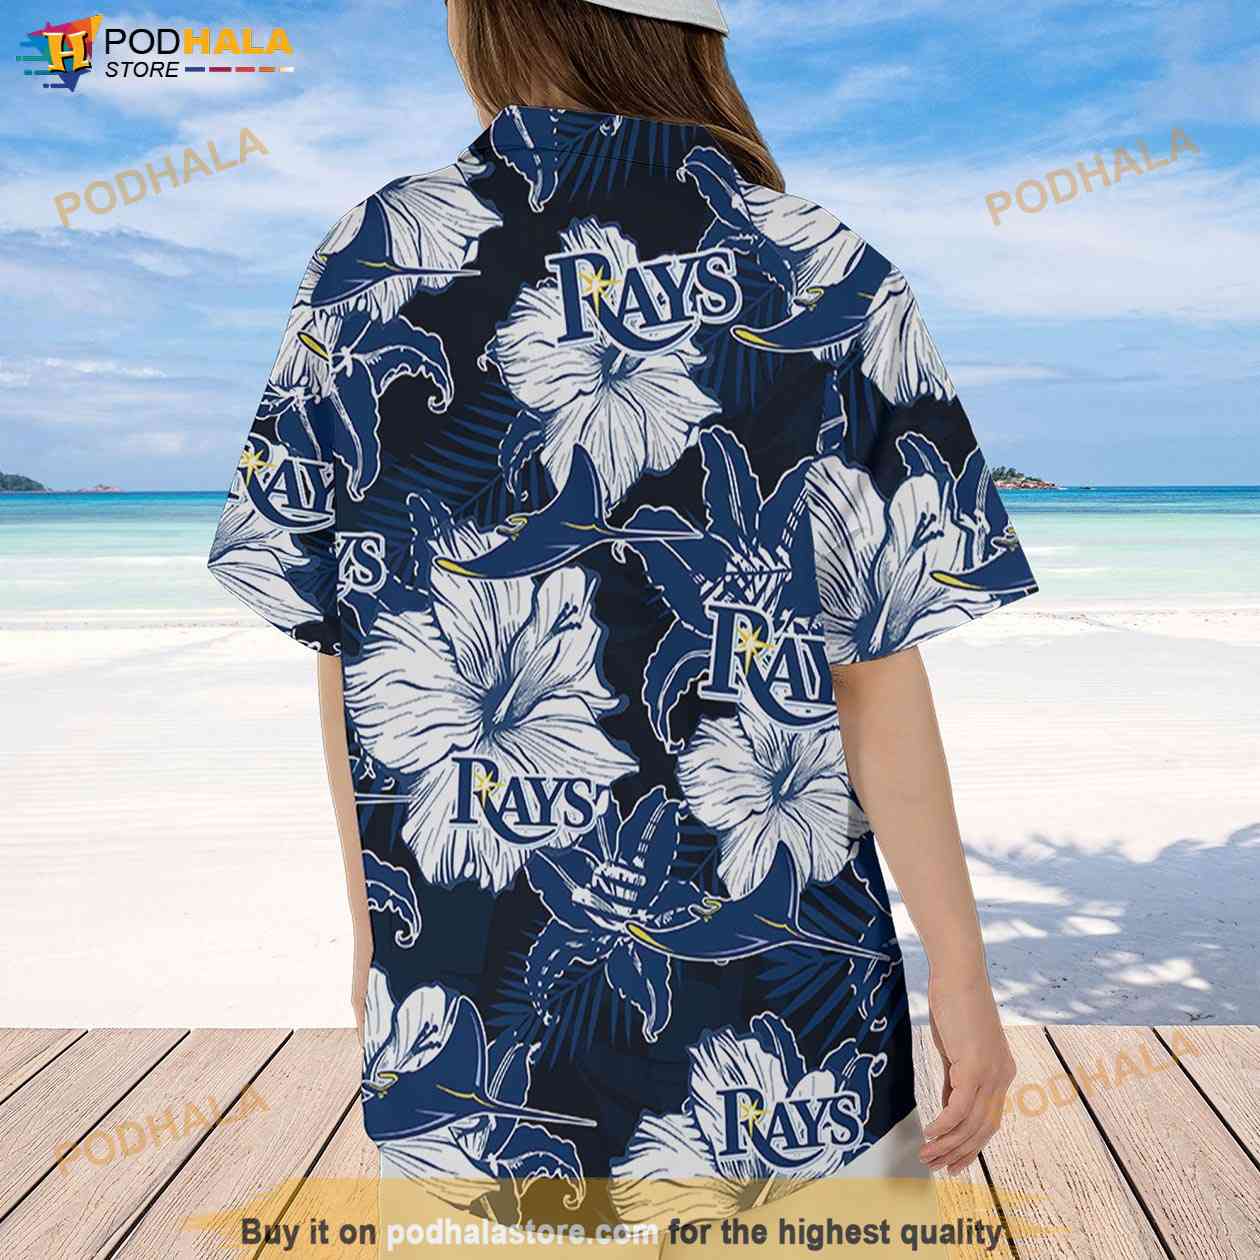 Tampa Bay Rays Hawaiian Shirt For Men Women - T-shirts Low Price